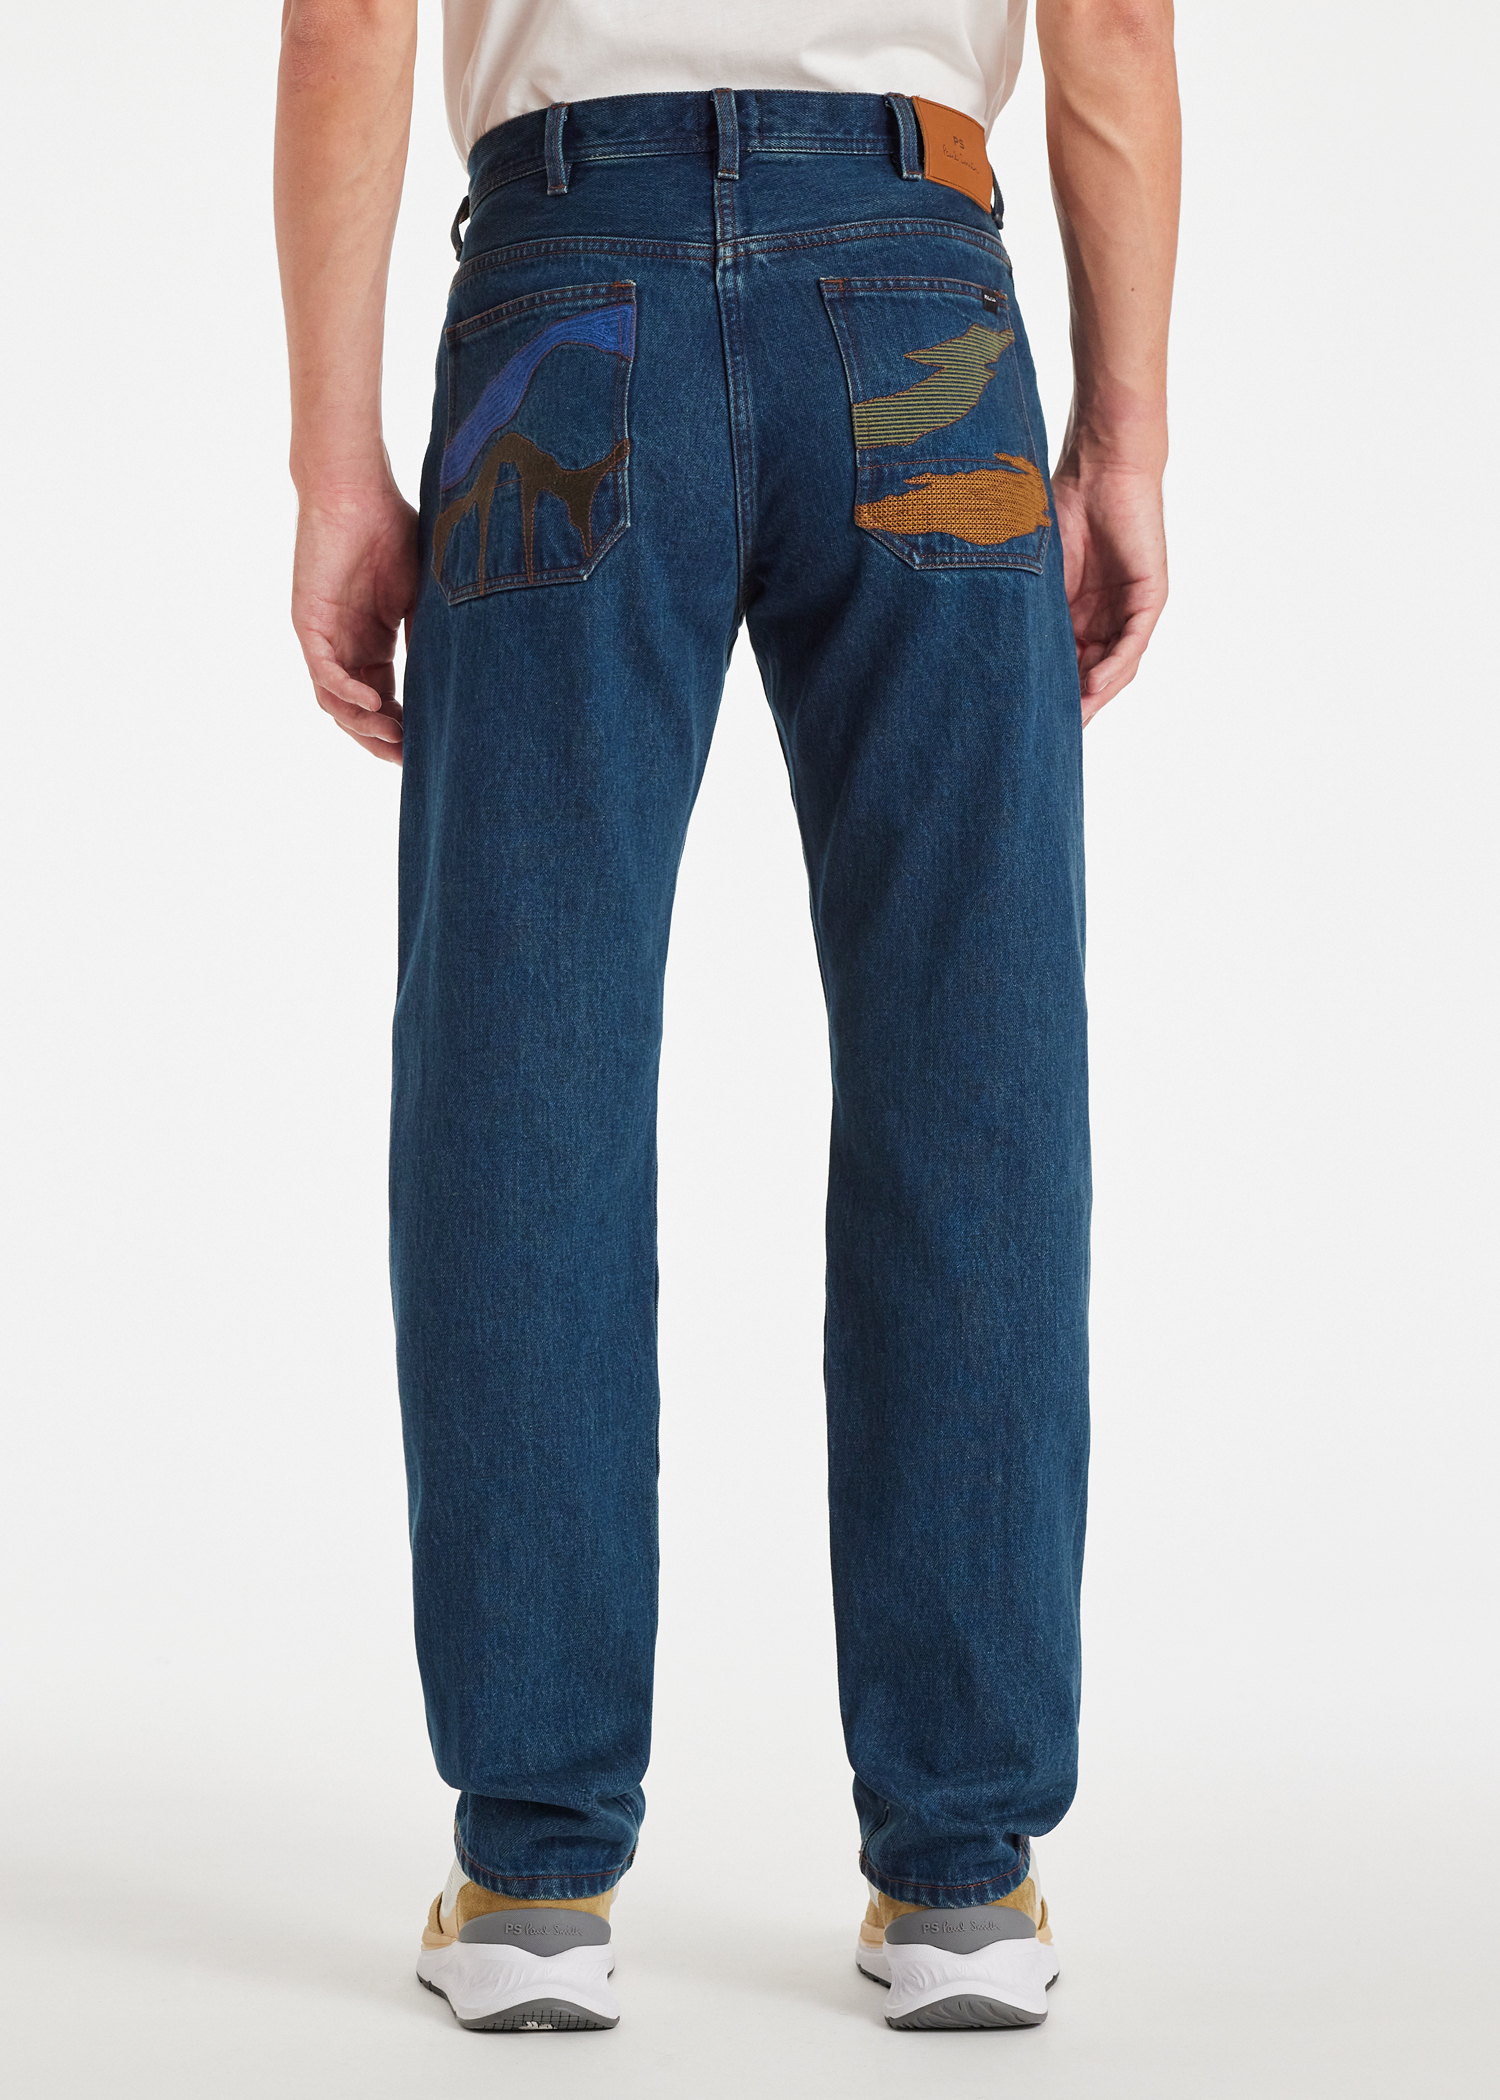 Designer Jeans for Men | Paul Smith